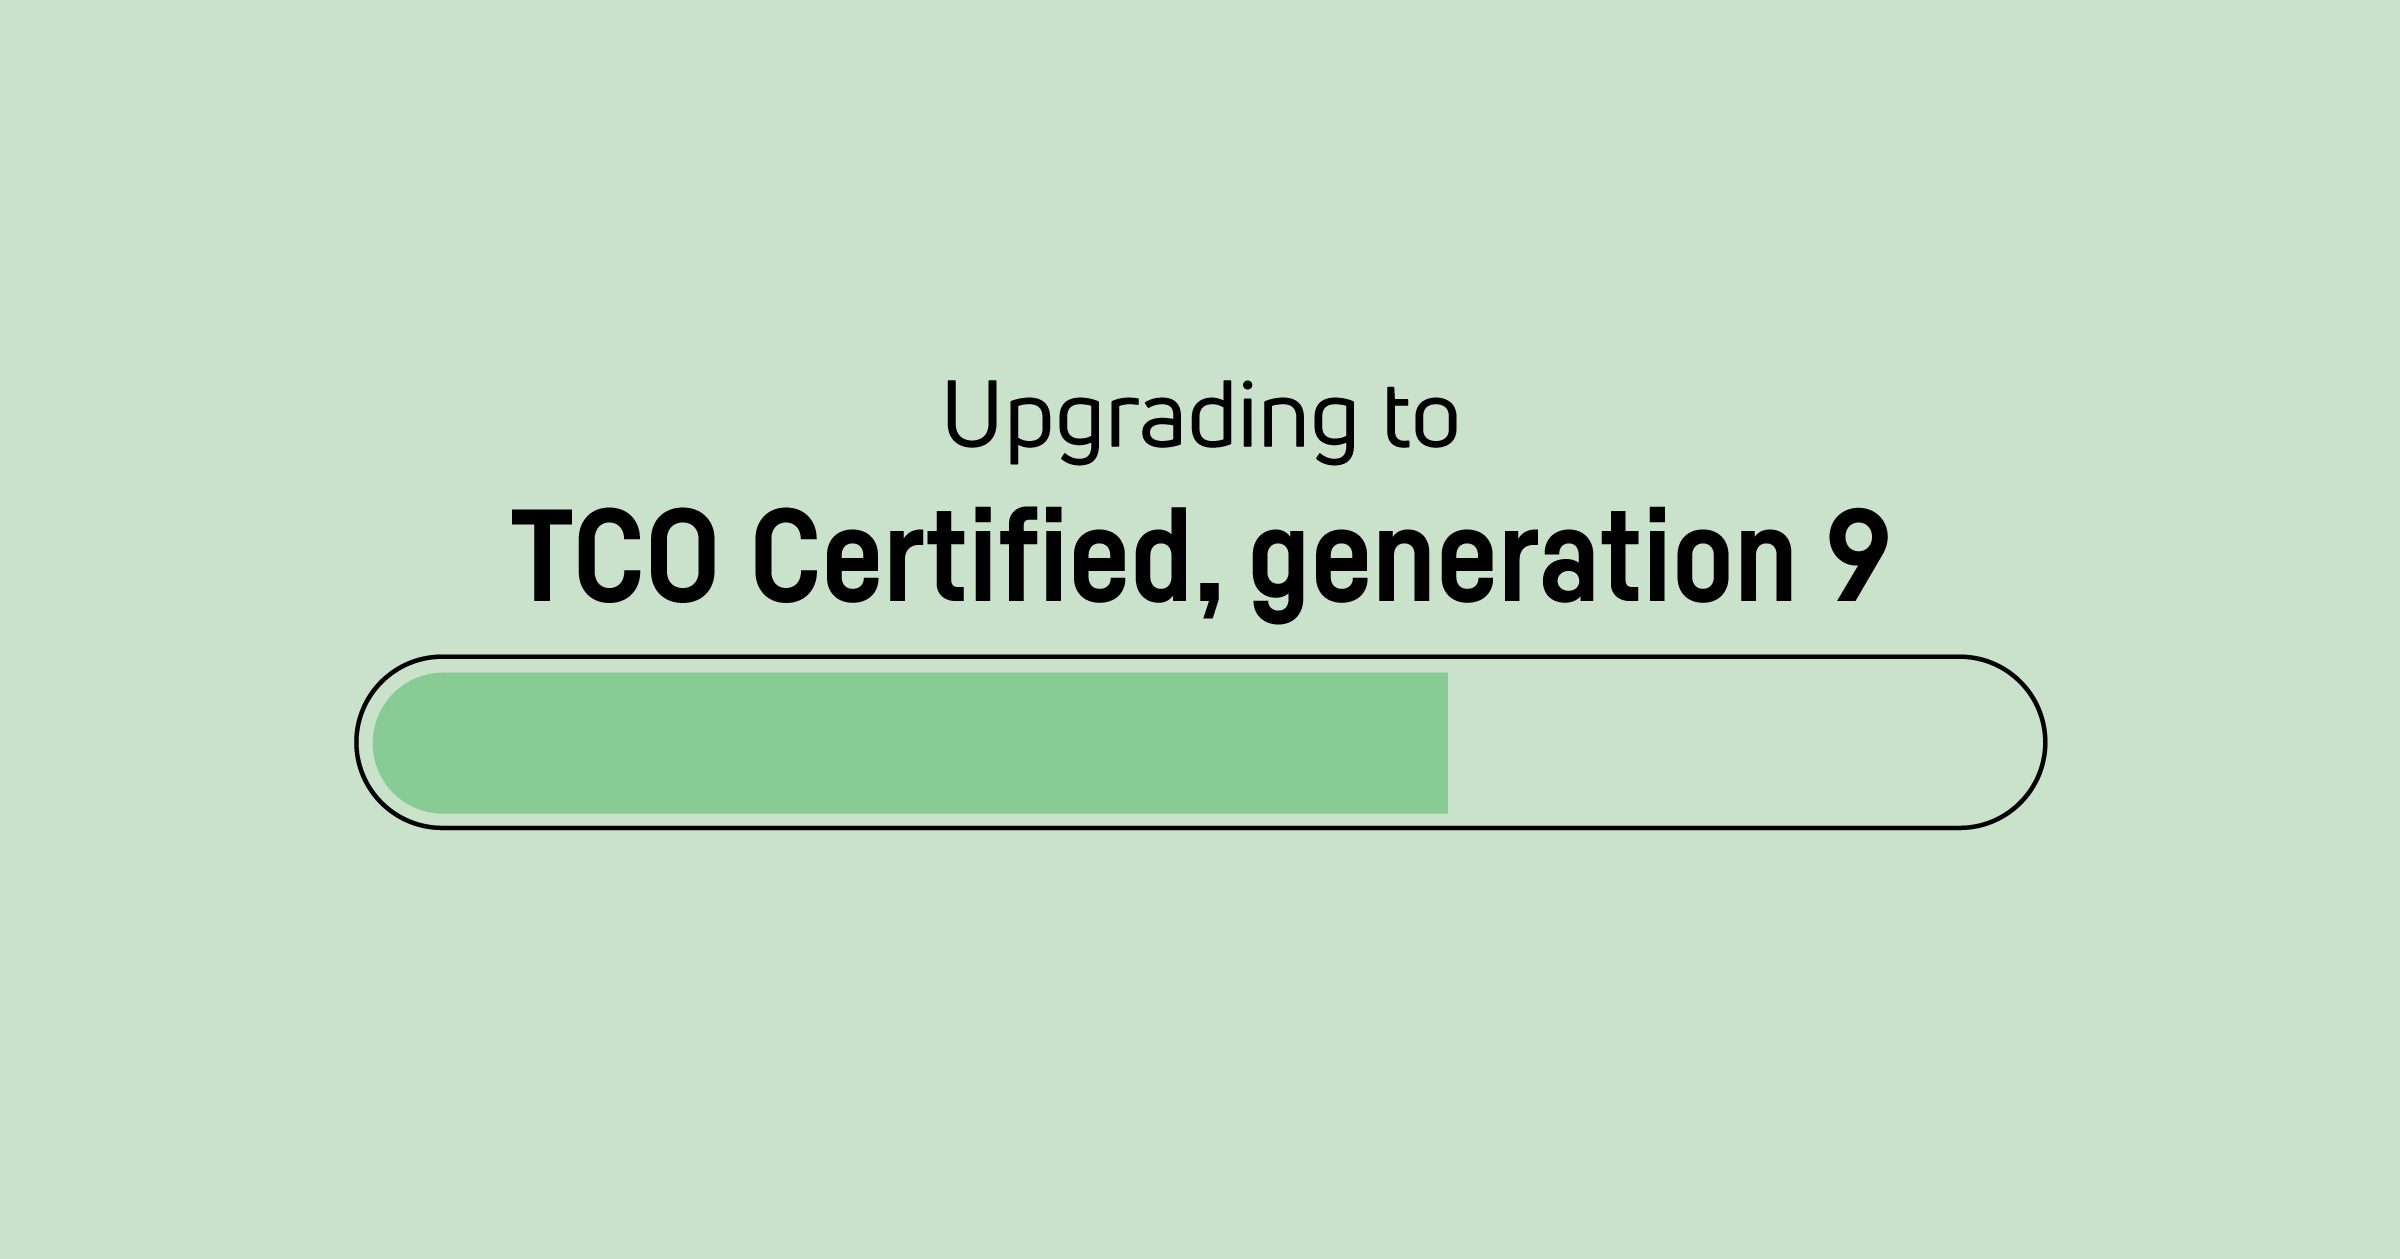 Il est temps de mettre à jour les certificats TCO Certified, generation 8